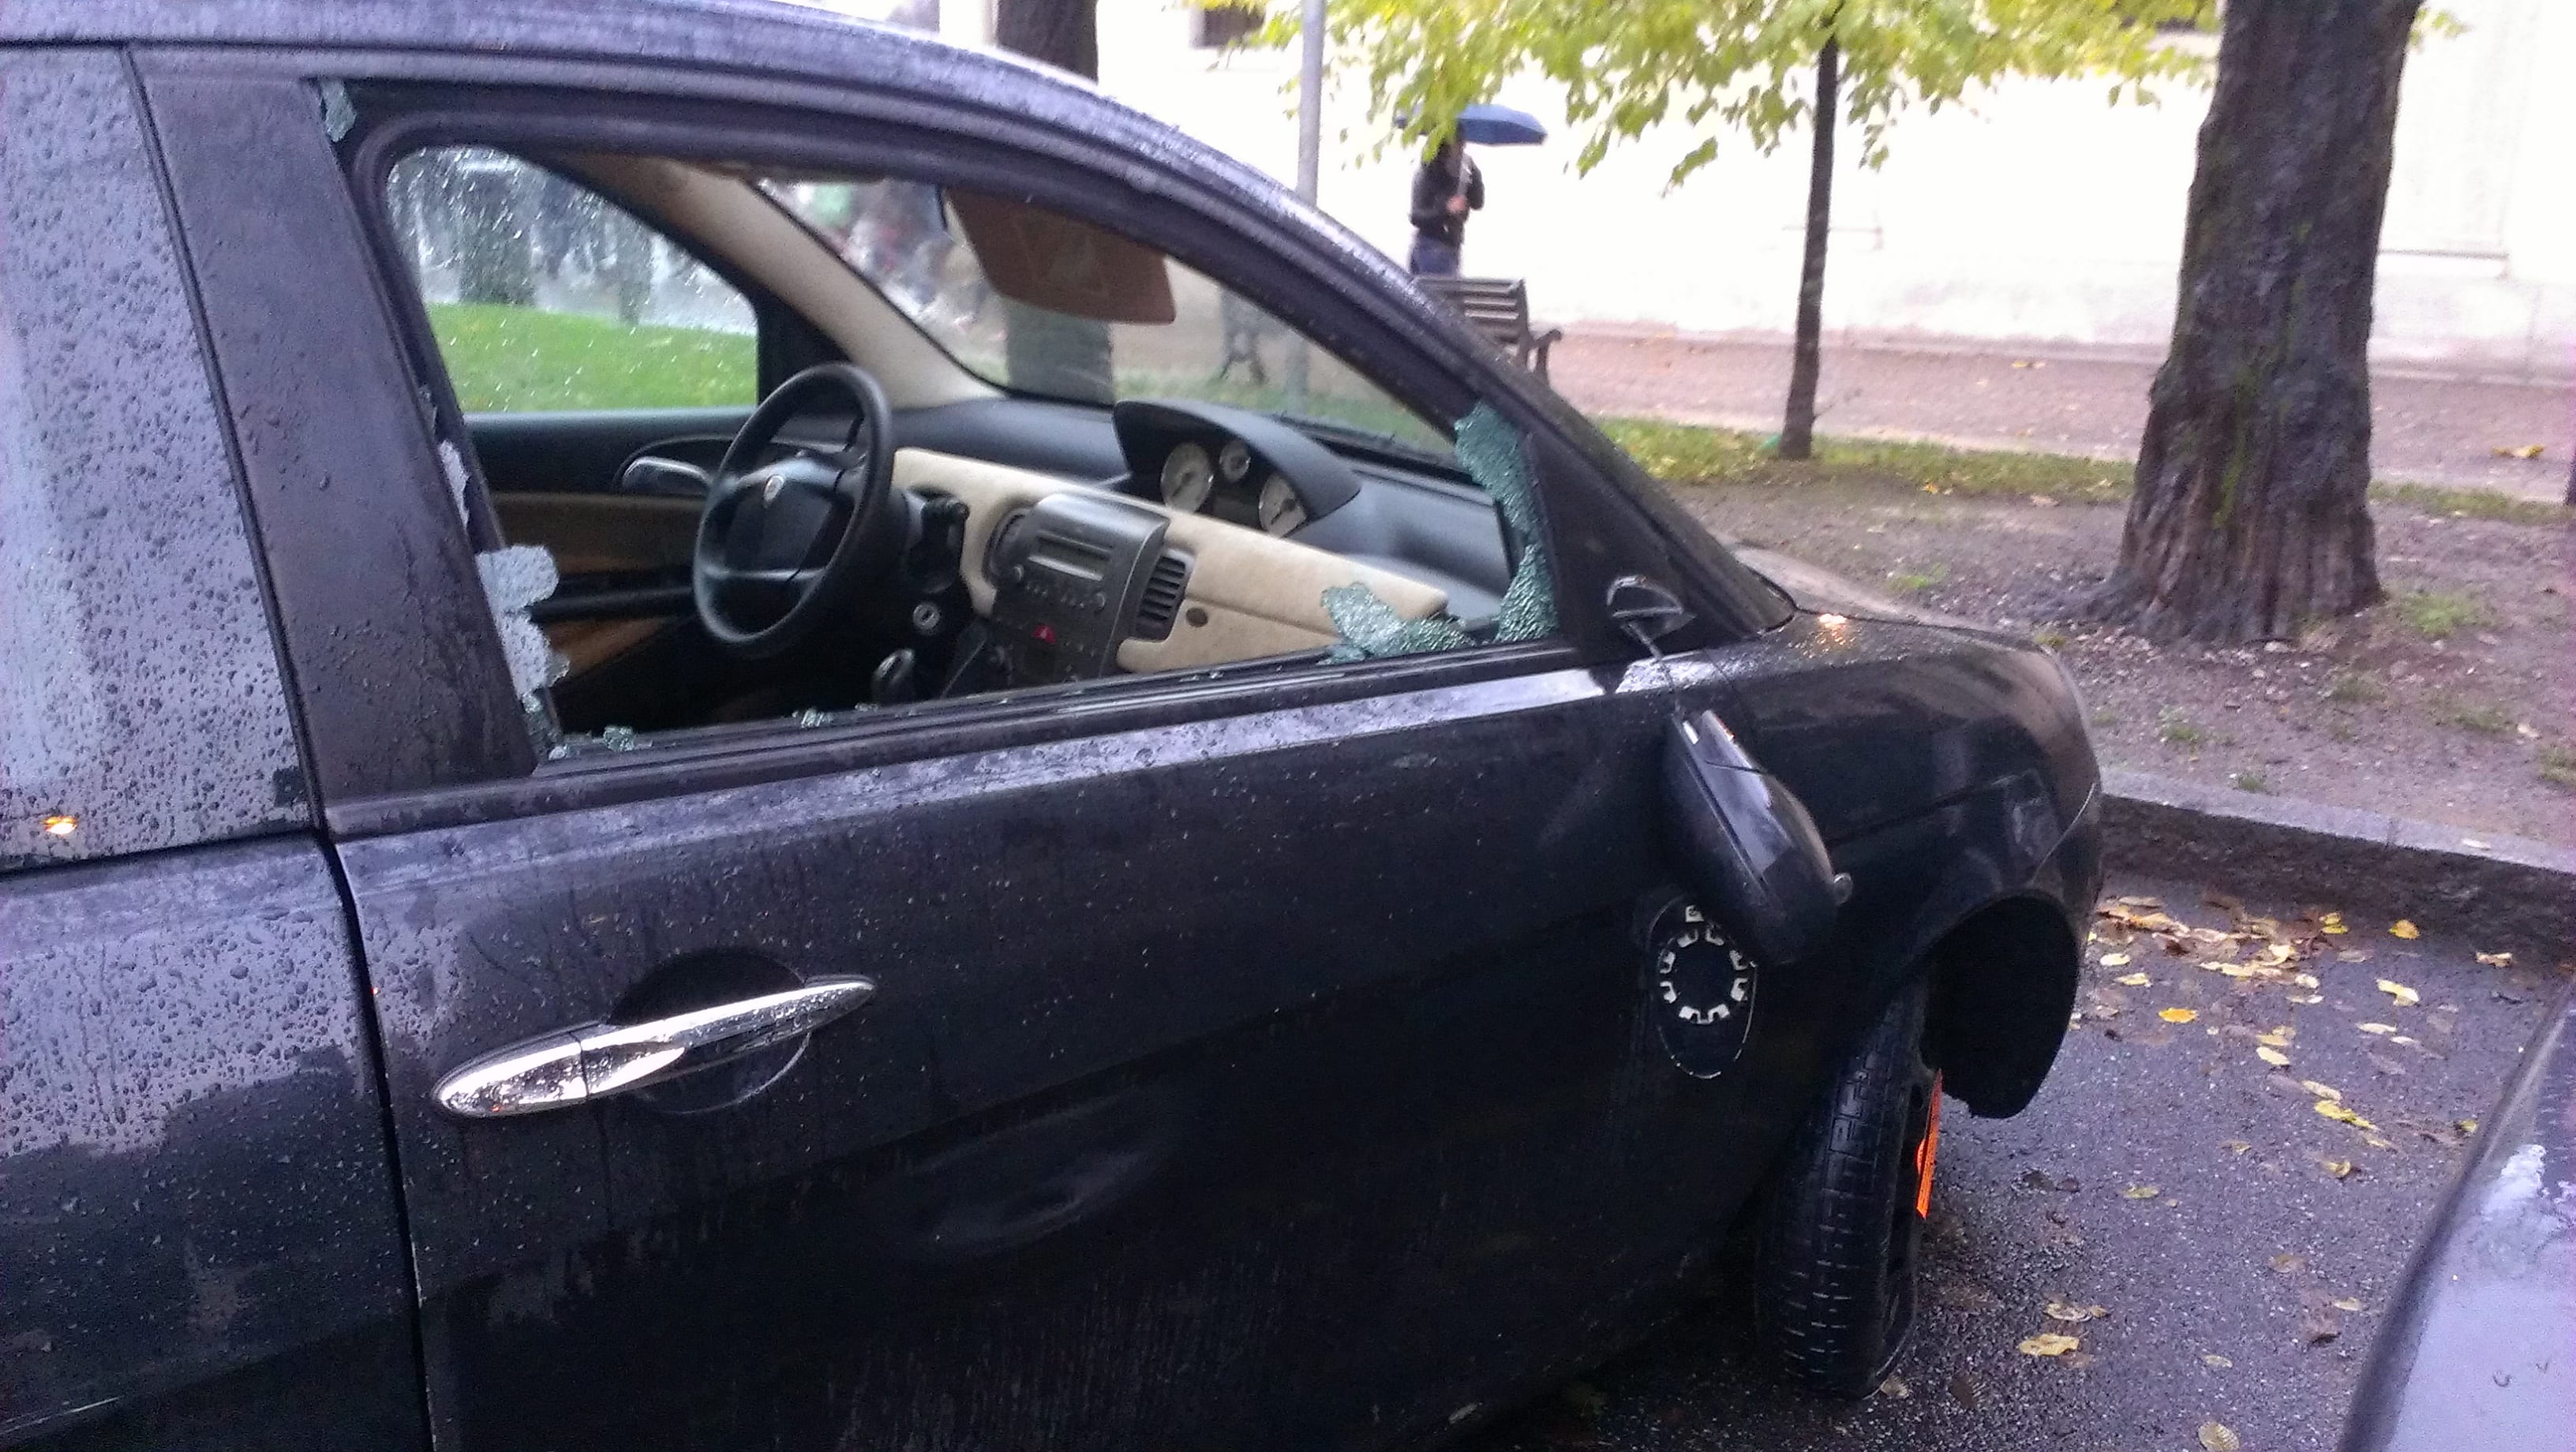 Ieri a Saronno: auto vandalizzate al Prealpi, scomparso a Cascina Colombara. Lutto per l’insegnante Paola